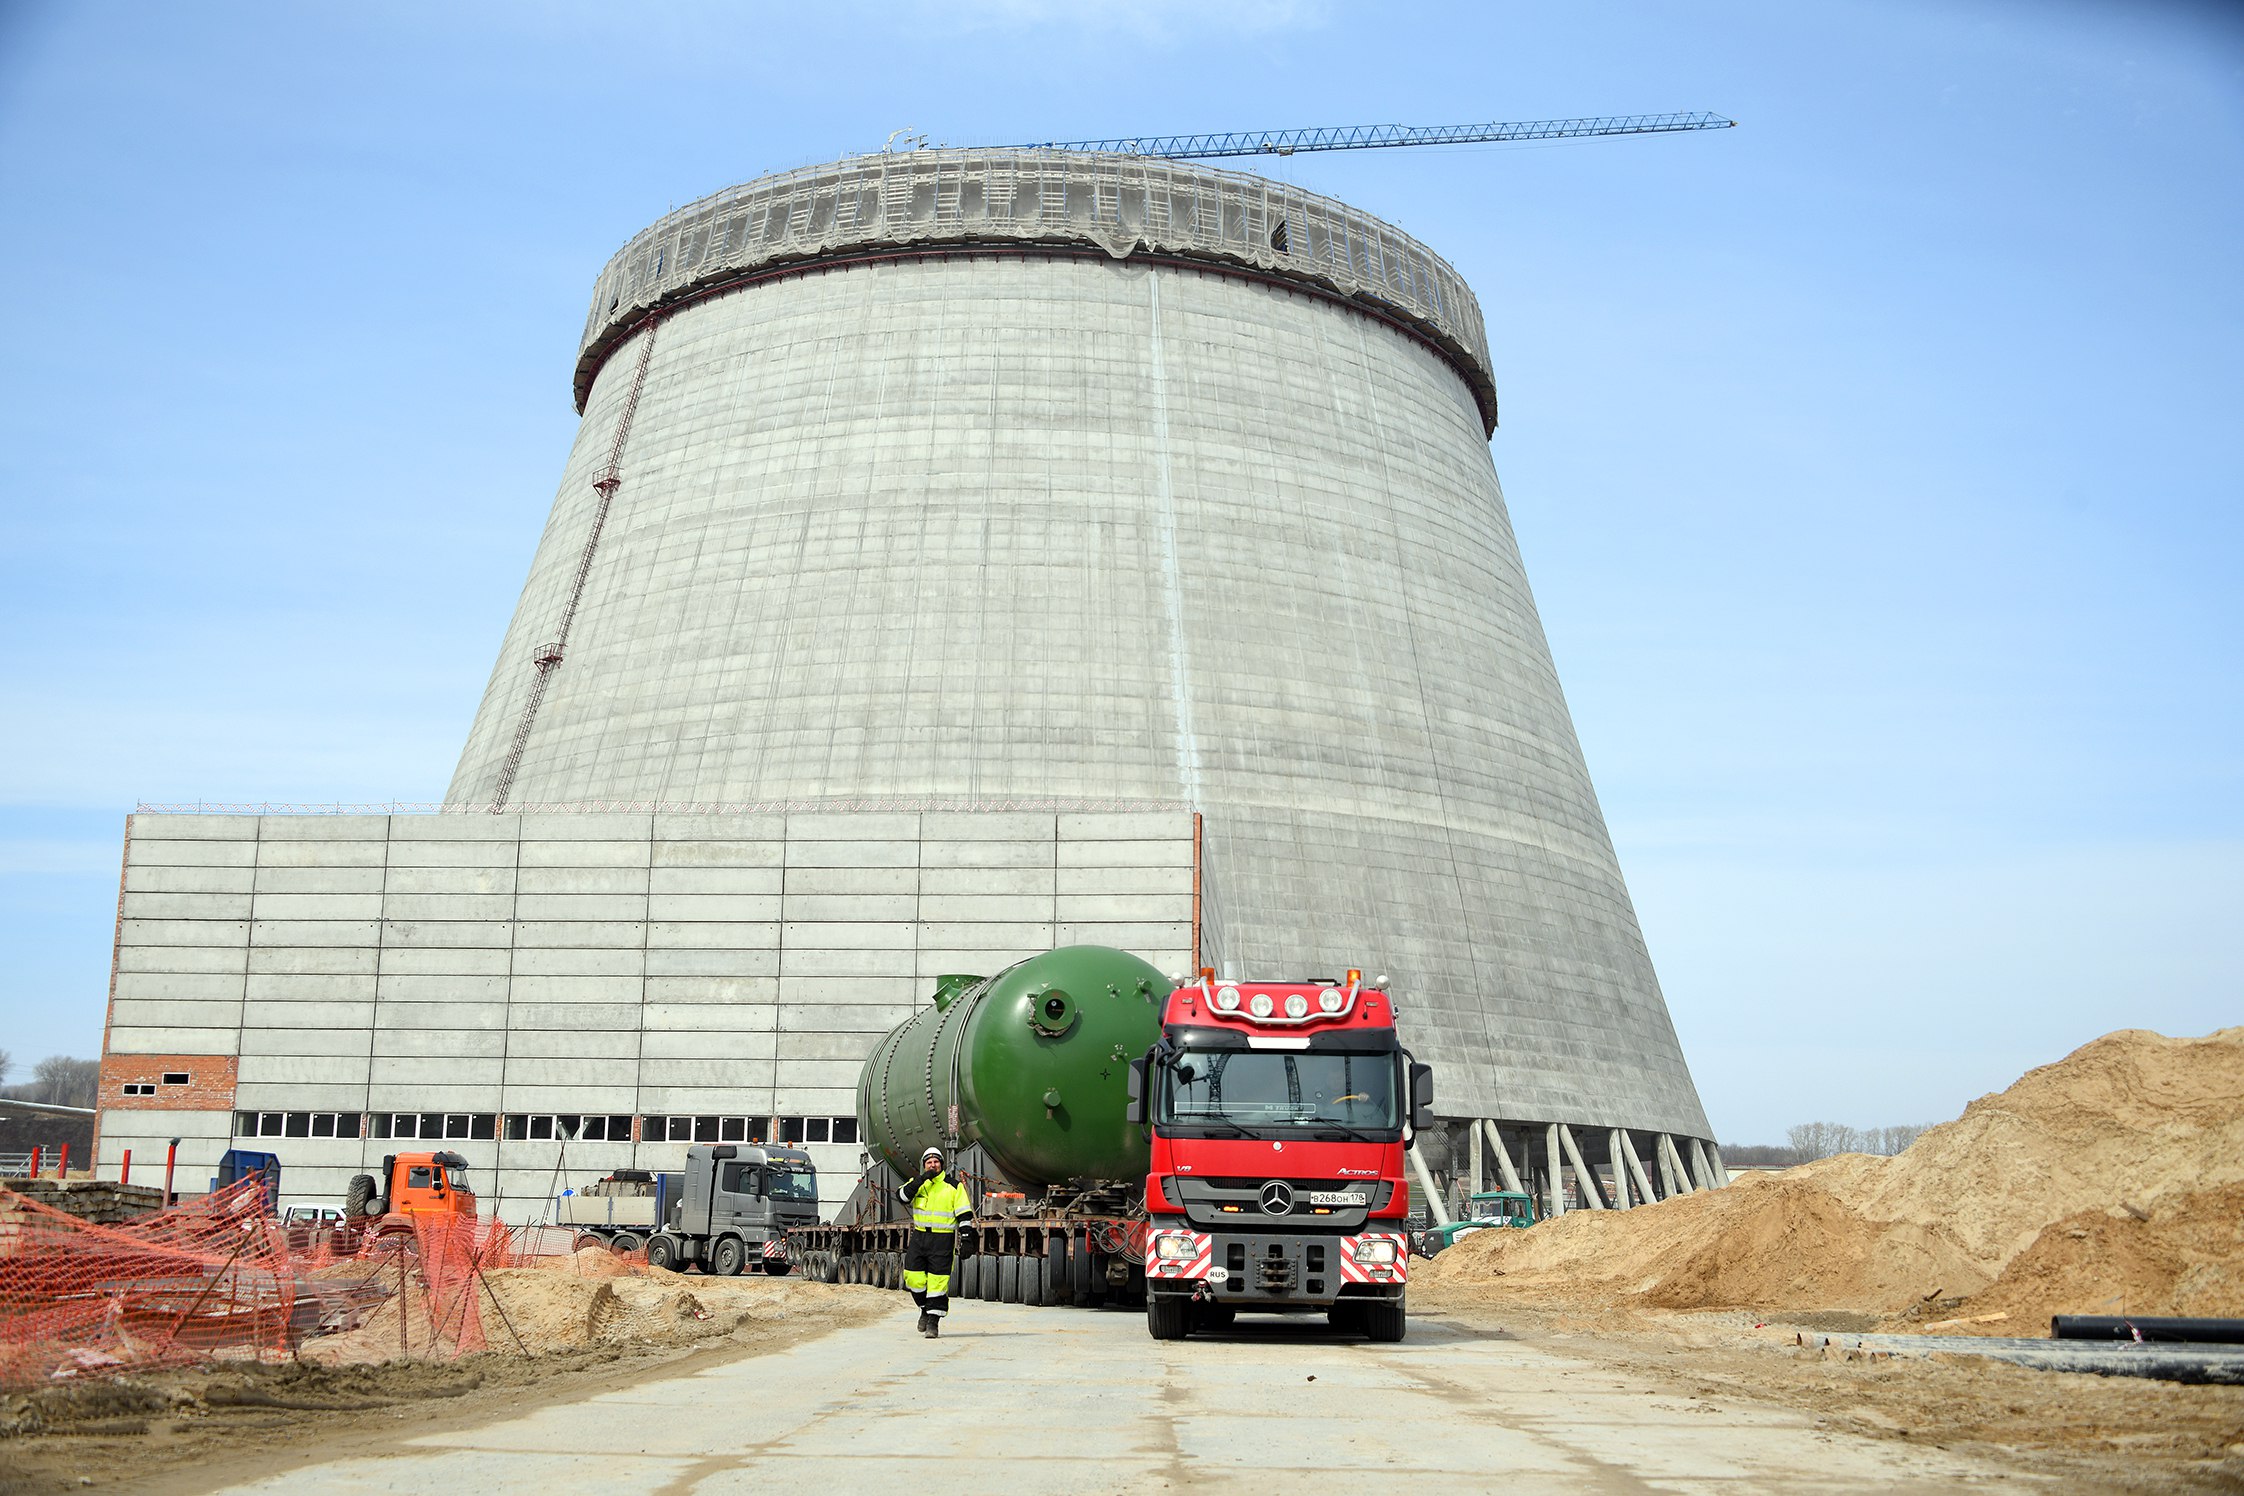 Steam generator nuclear фото 119